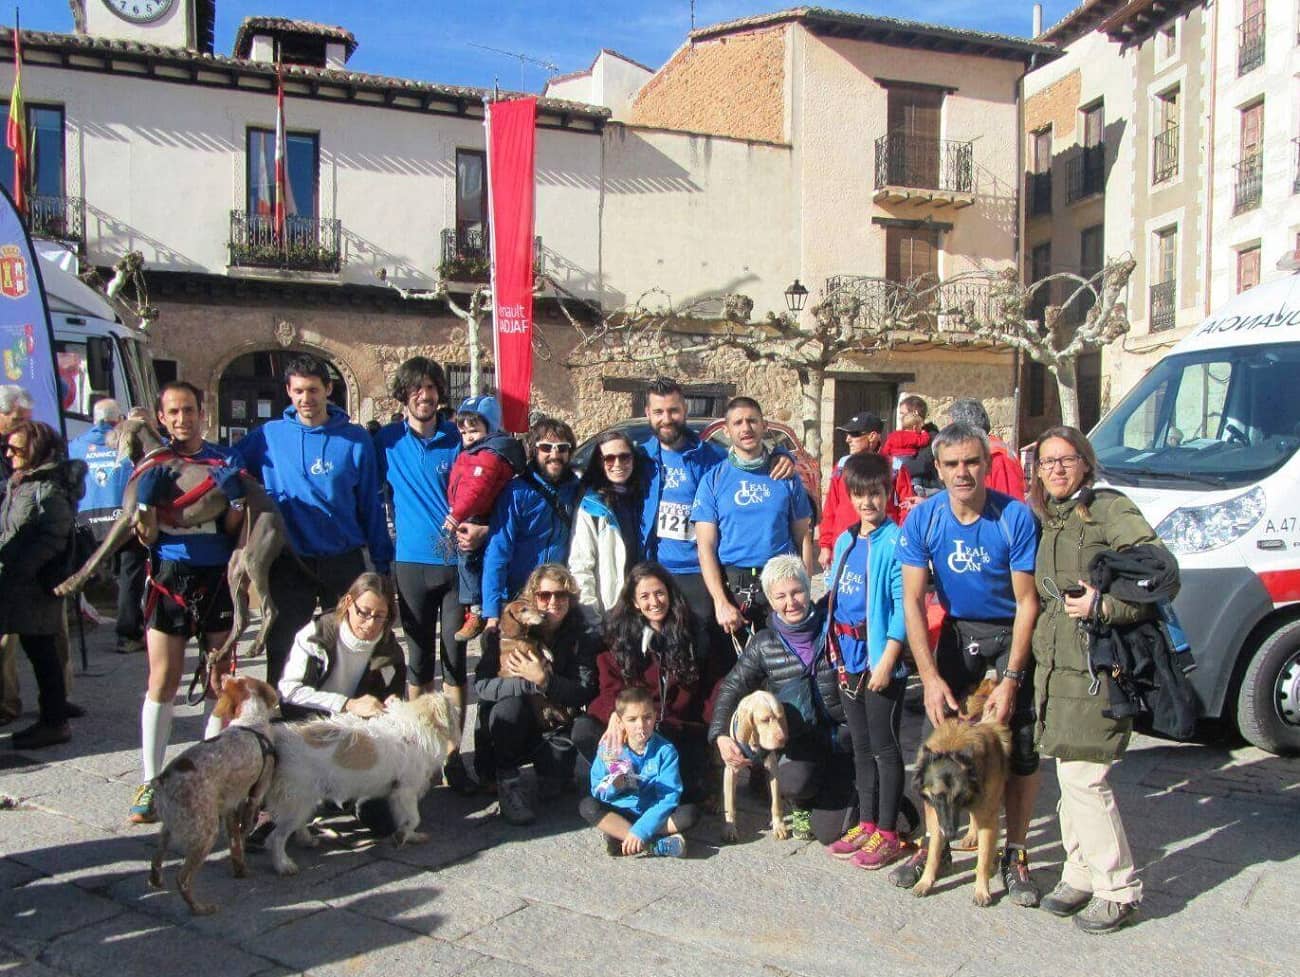 Foto del equipo de Canicross LealCan. Hay 16 personas y 5 perros